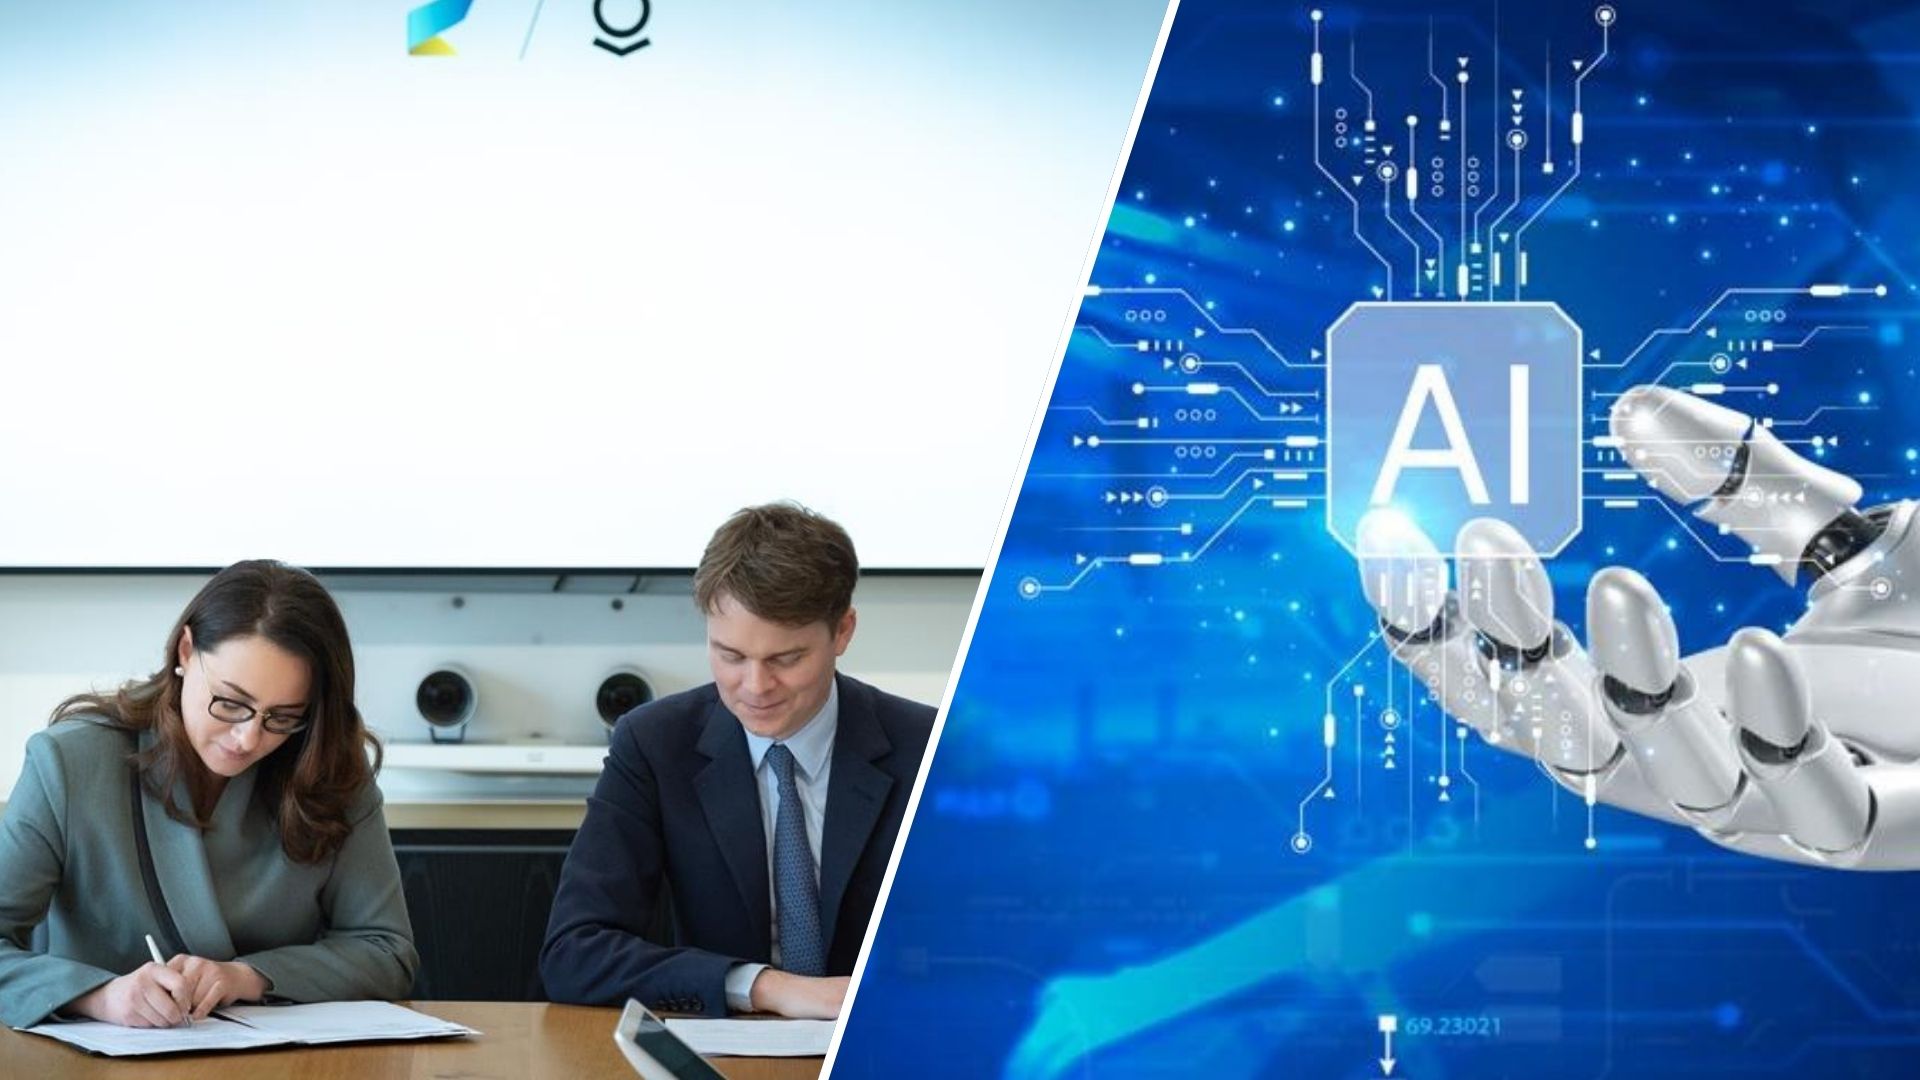 Министерство экономики Украины и технологическая компания Palantir, специализирующаяся на аналитике больших данных, подписали соглашение о партнерстве, которое предусматривает вовлечение искусственного интеллекта (ИИ) в процесс гуманитарного разминирования украинских территорий в будущем.